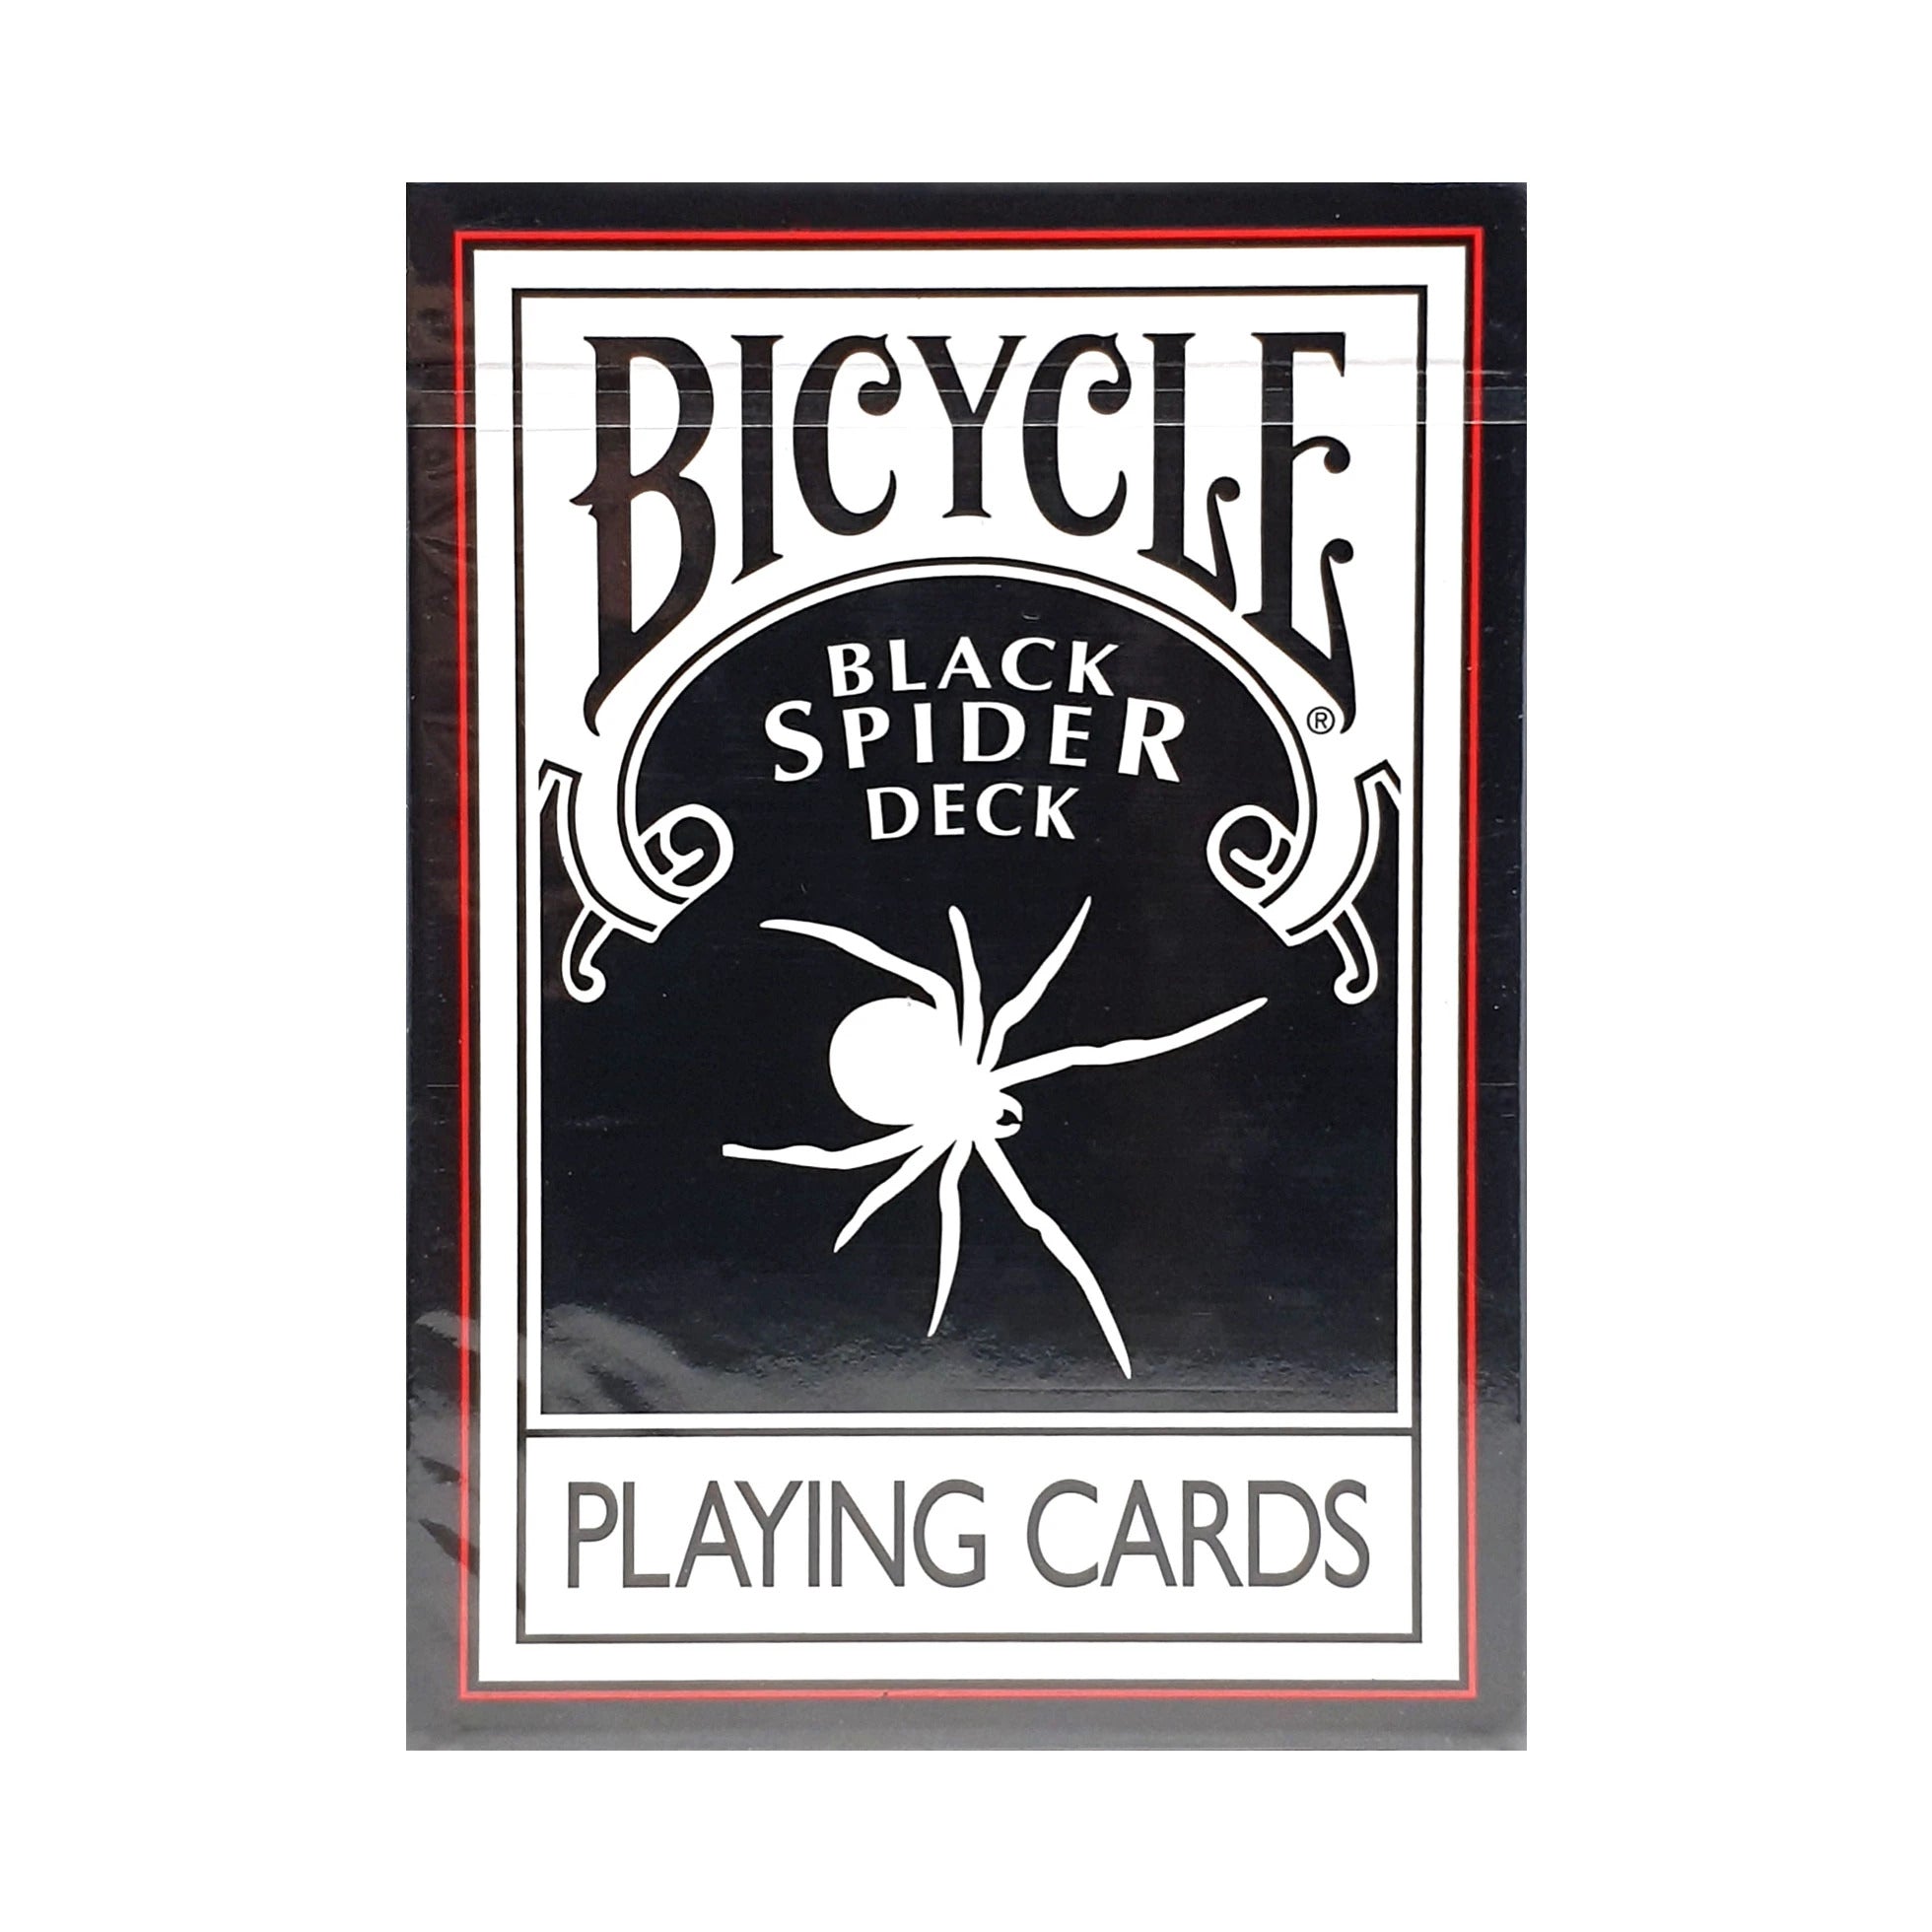 Bicycle Black Spider Deck